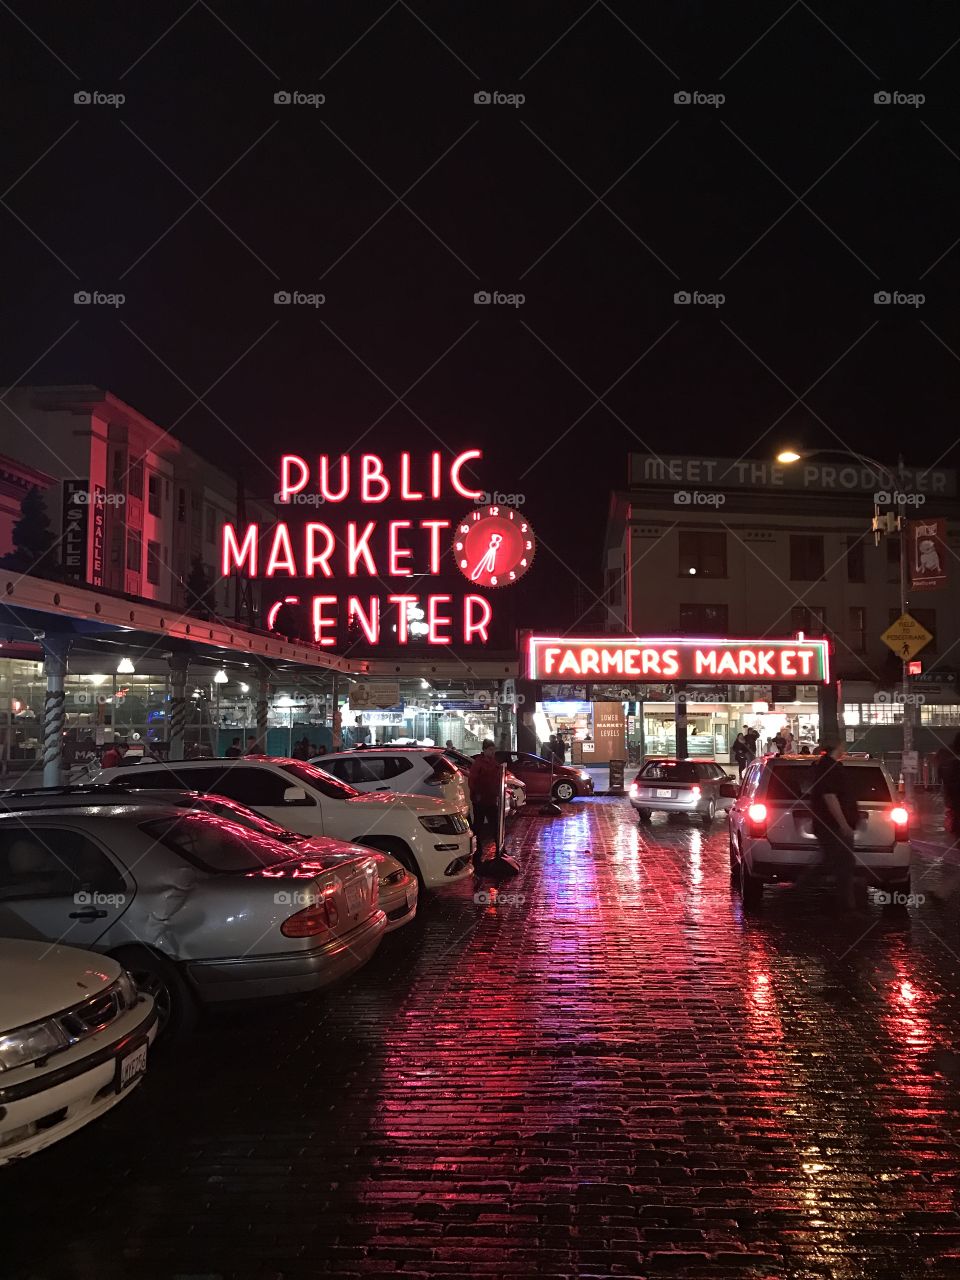 Pike Place Market in Seattle, WA